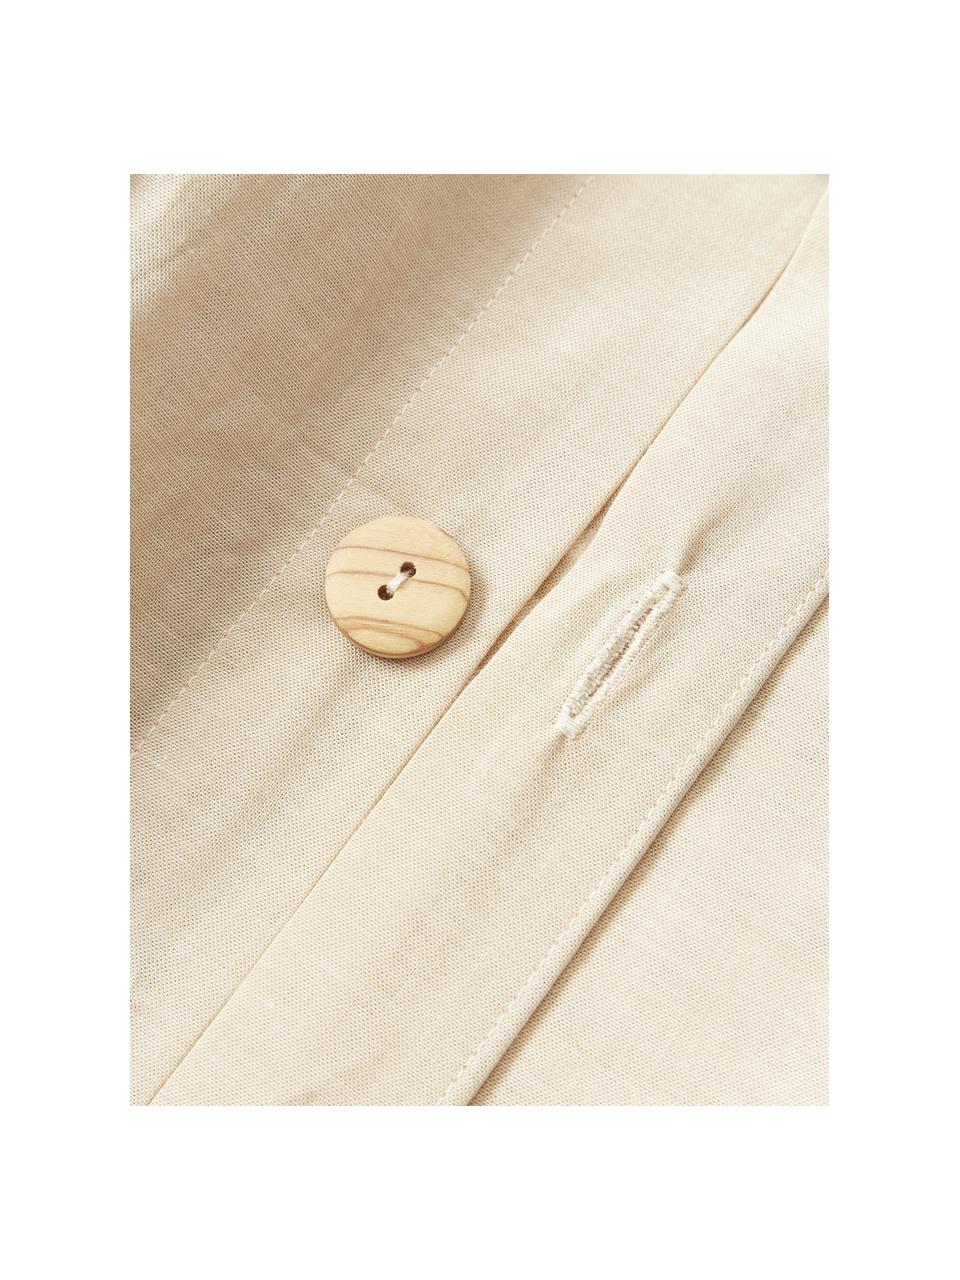 Seersucker-Bettdeckenbezug Davey mit Karo-Muster, Webart: Seersucker Fadendichte 16, Beige, Weiss, B 200 x L 200 cm